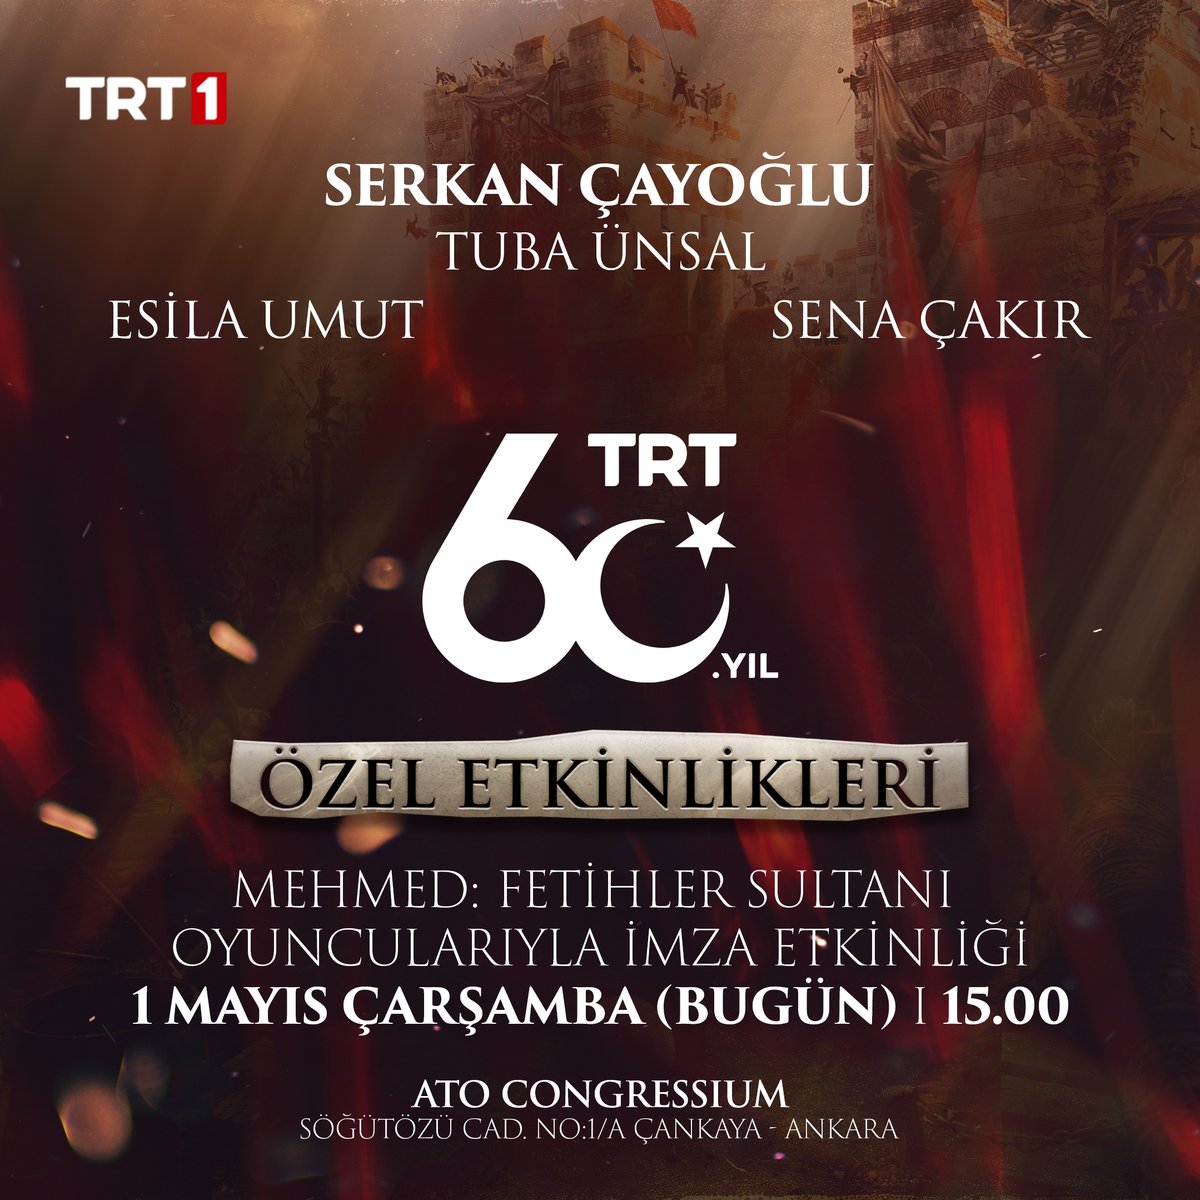 TRT 60. yıl etkinliklerinde #MehmedFetihlerSultanı efsanevi oyuncularıyla tarihi bir buluşmaya hazır mısınız?🔥

Bugün saat 15.00’te imza etkinliğimize tüm sevenlerimizi bekliyoruz!⚔️

@trt1